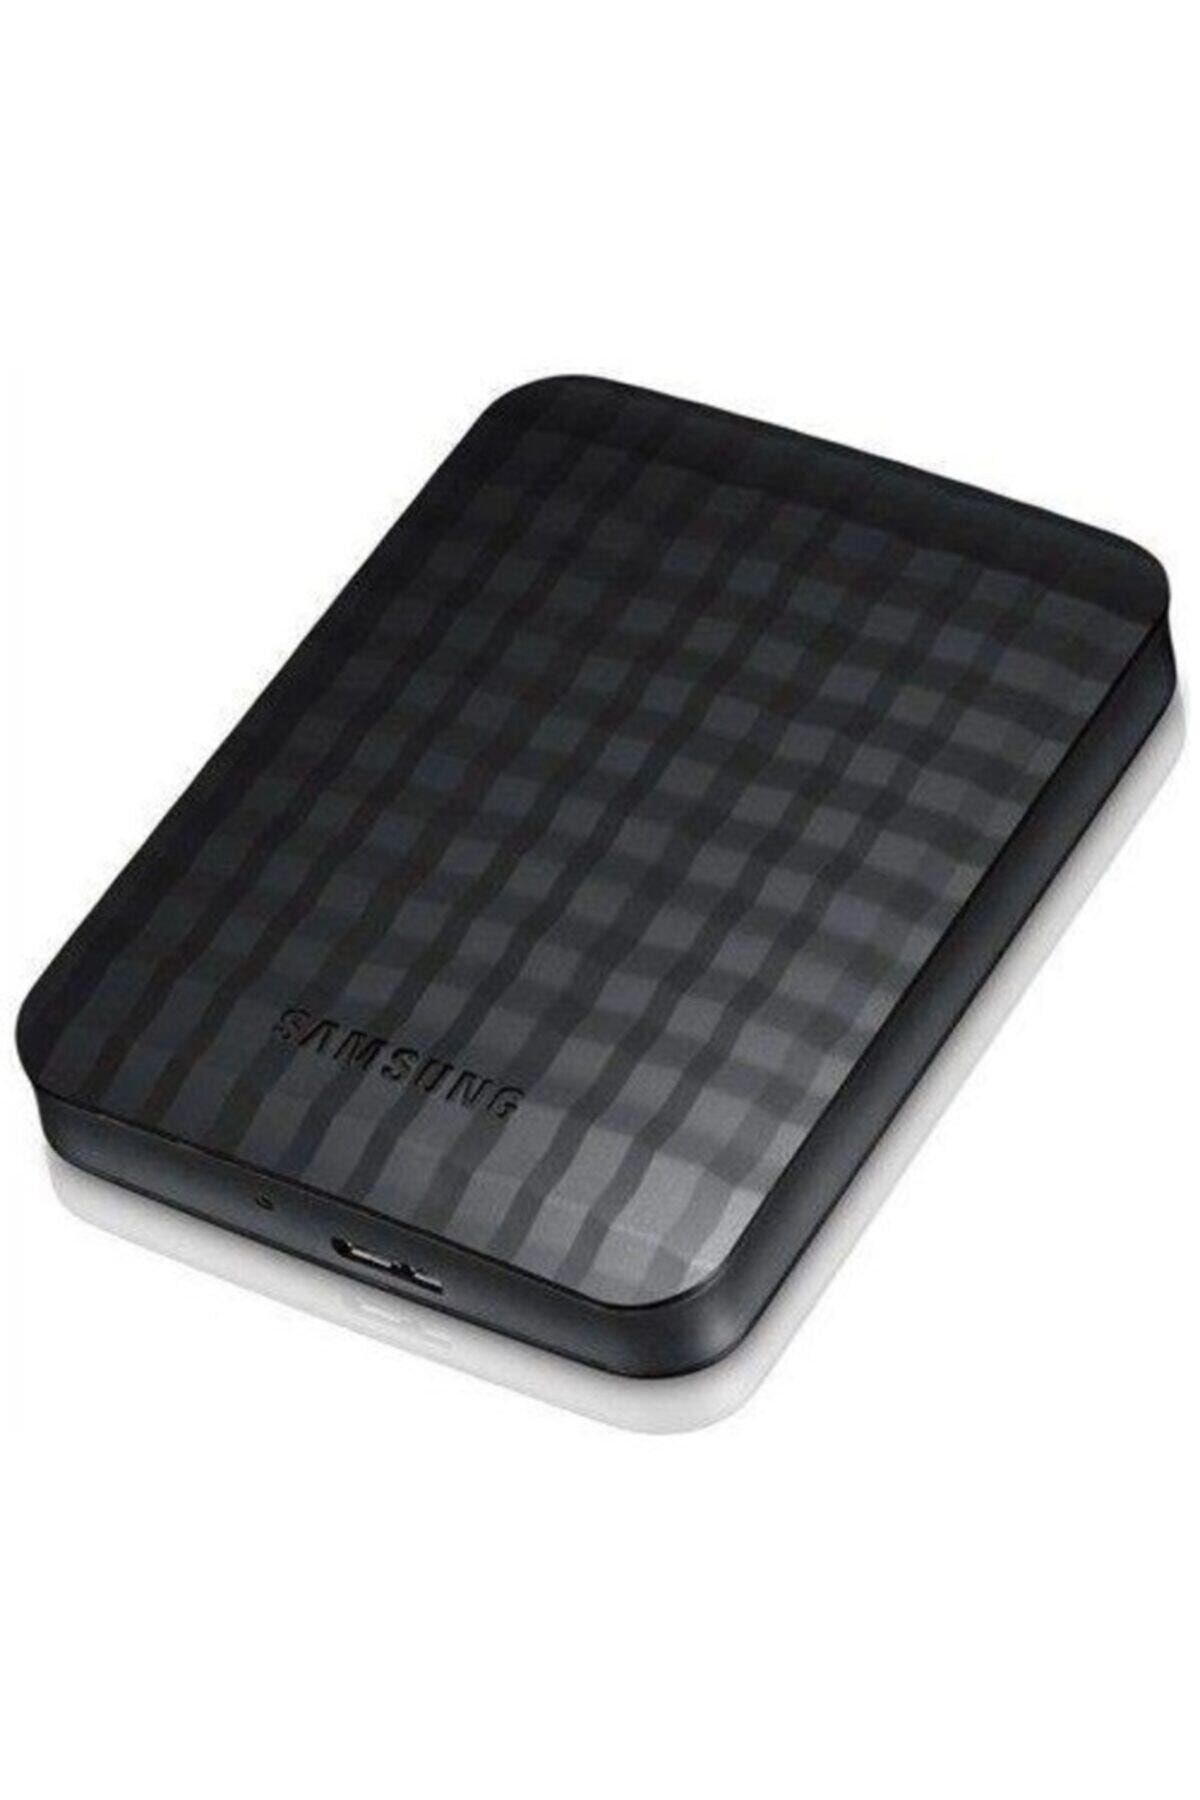 Samsung M3 320gb 2.5" Usb Harici Taşınabilir Disk